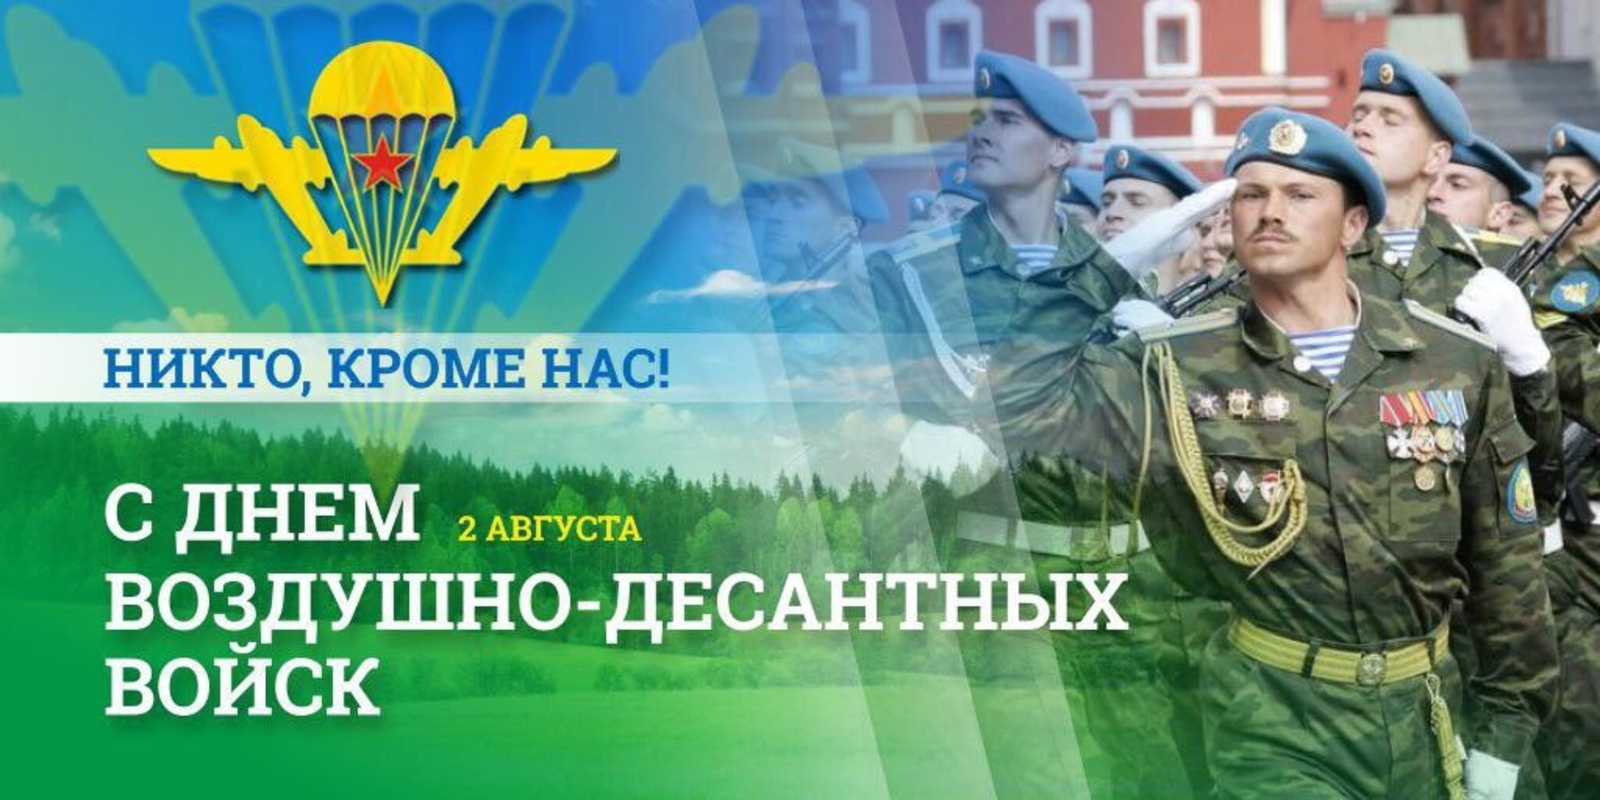 Президент России поздравил военнослужащих и ветеранов с днем Воздушно-десантных войск